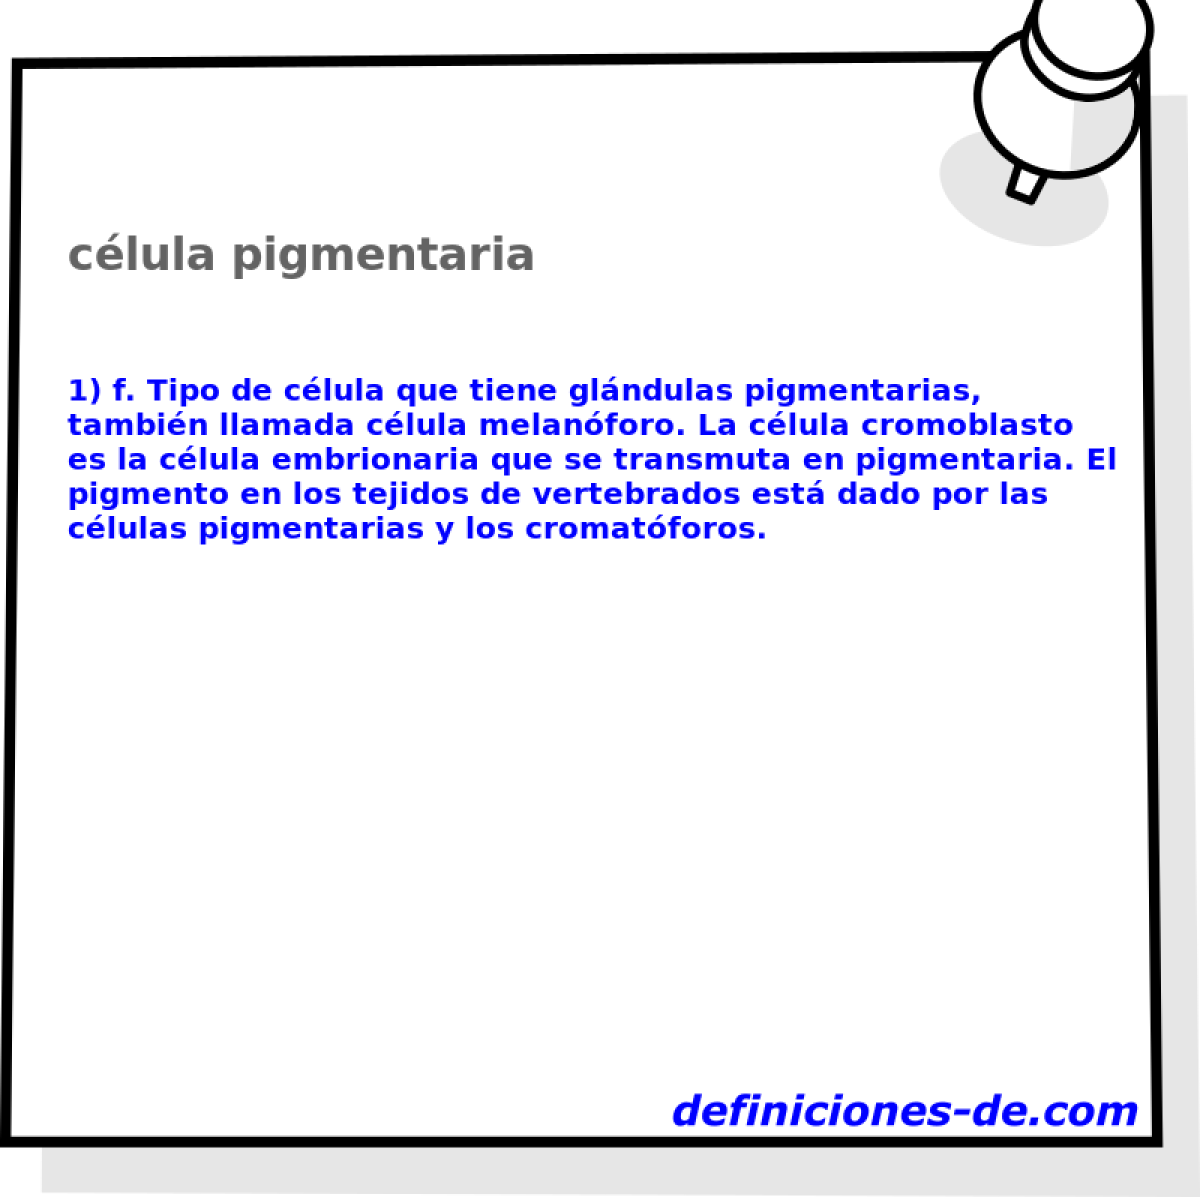 clula pigmentaria 